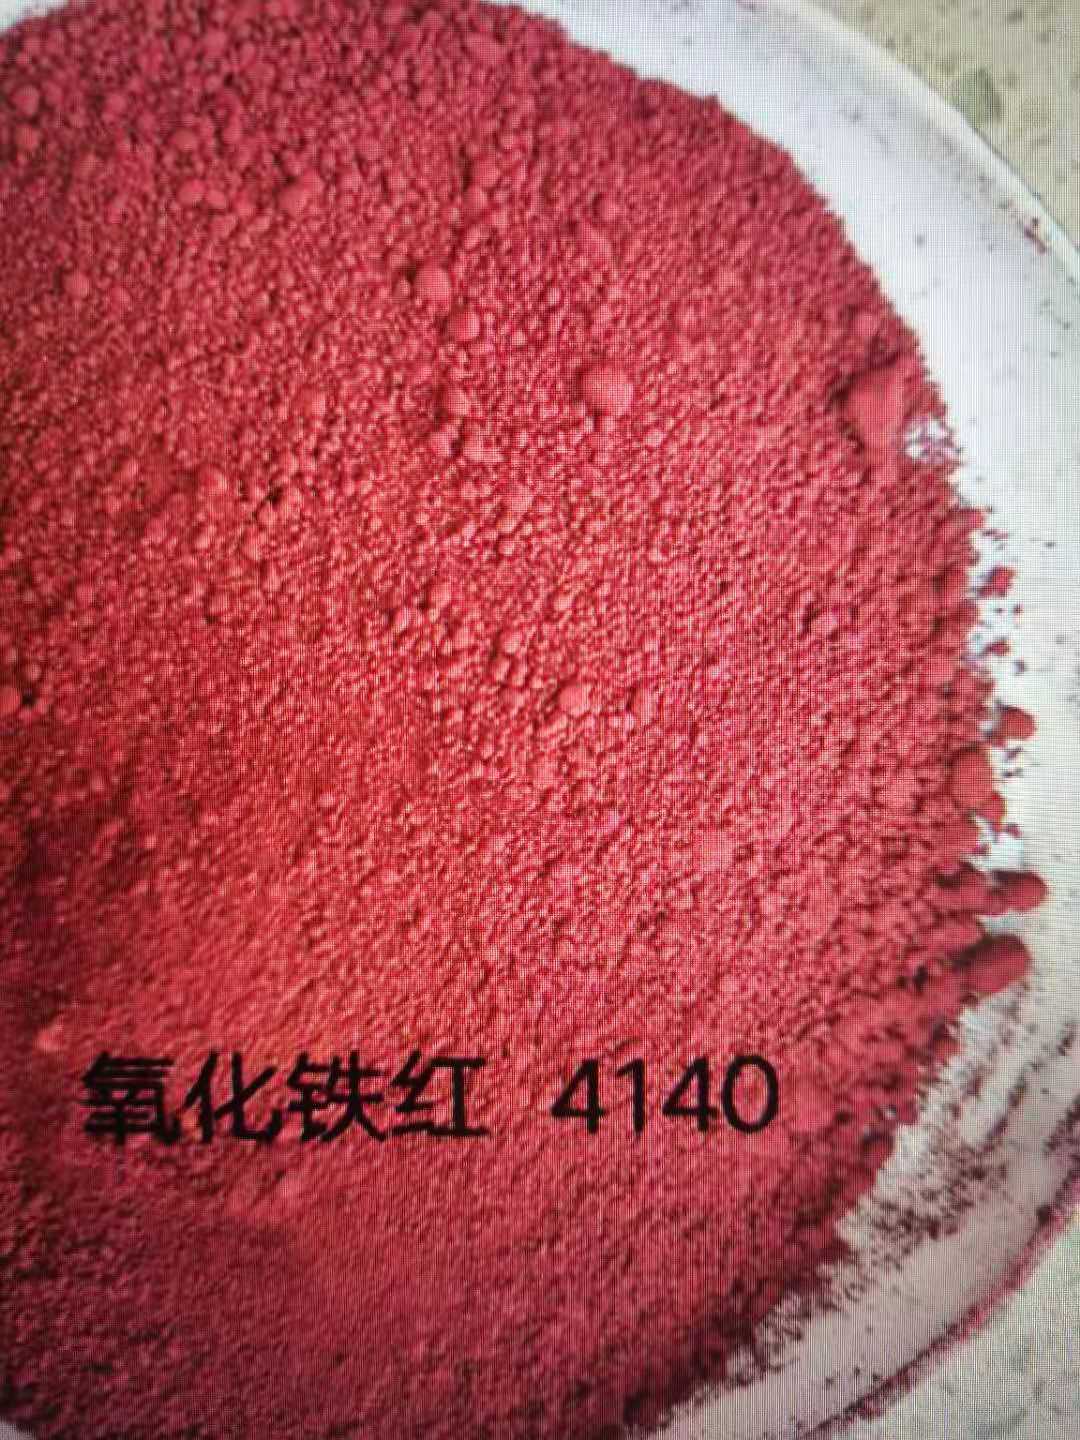 拜耳乐铁红4140紫相氧化铁无机颜料